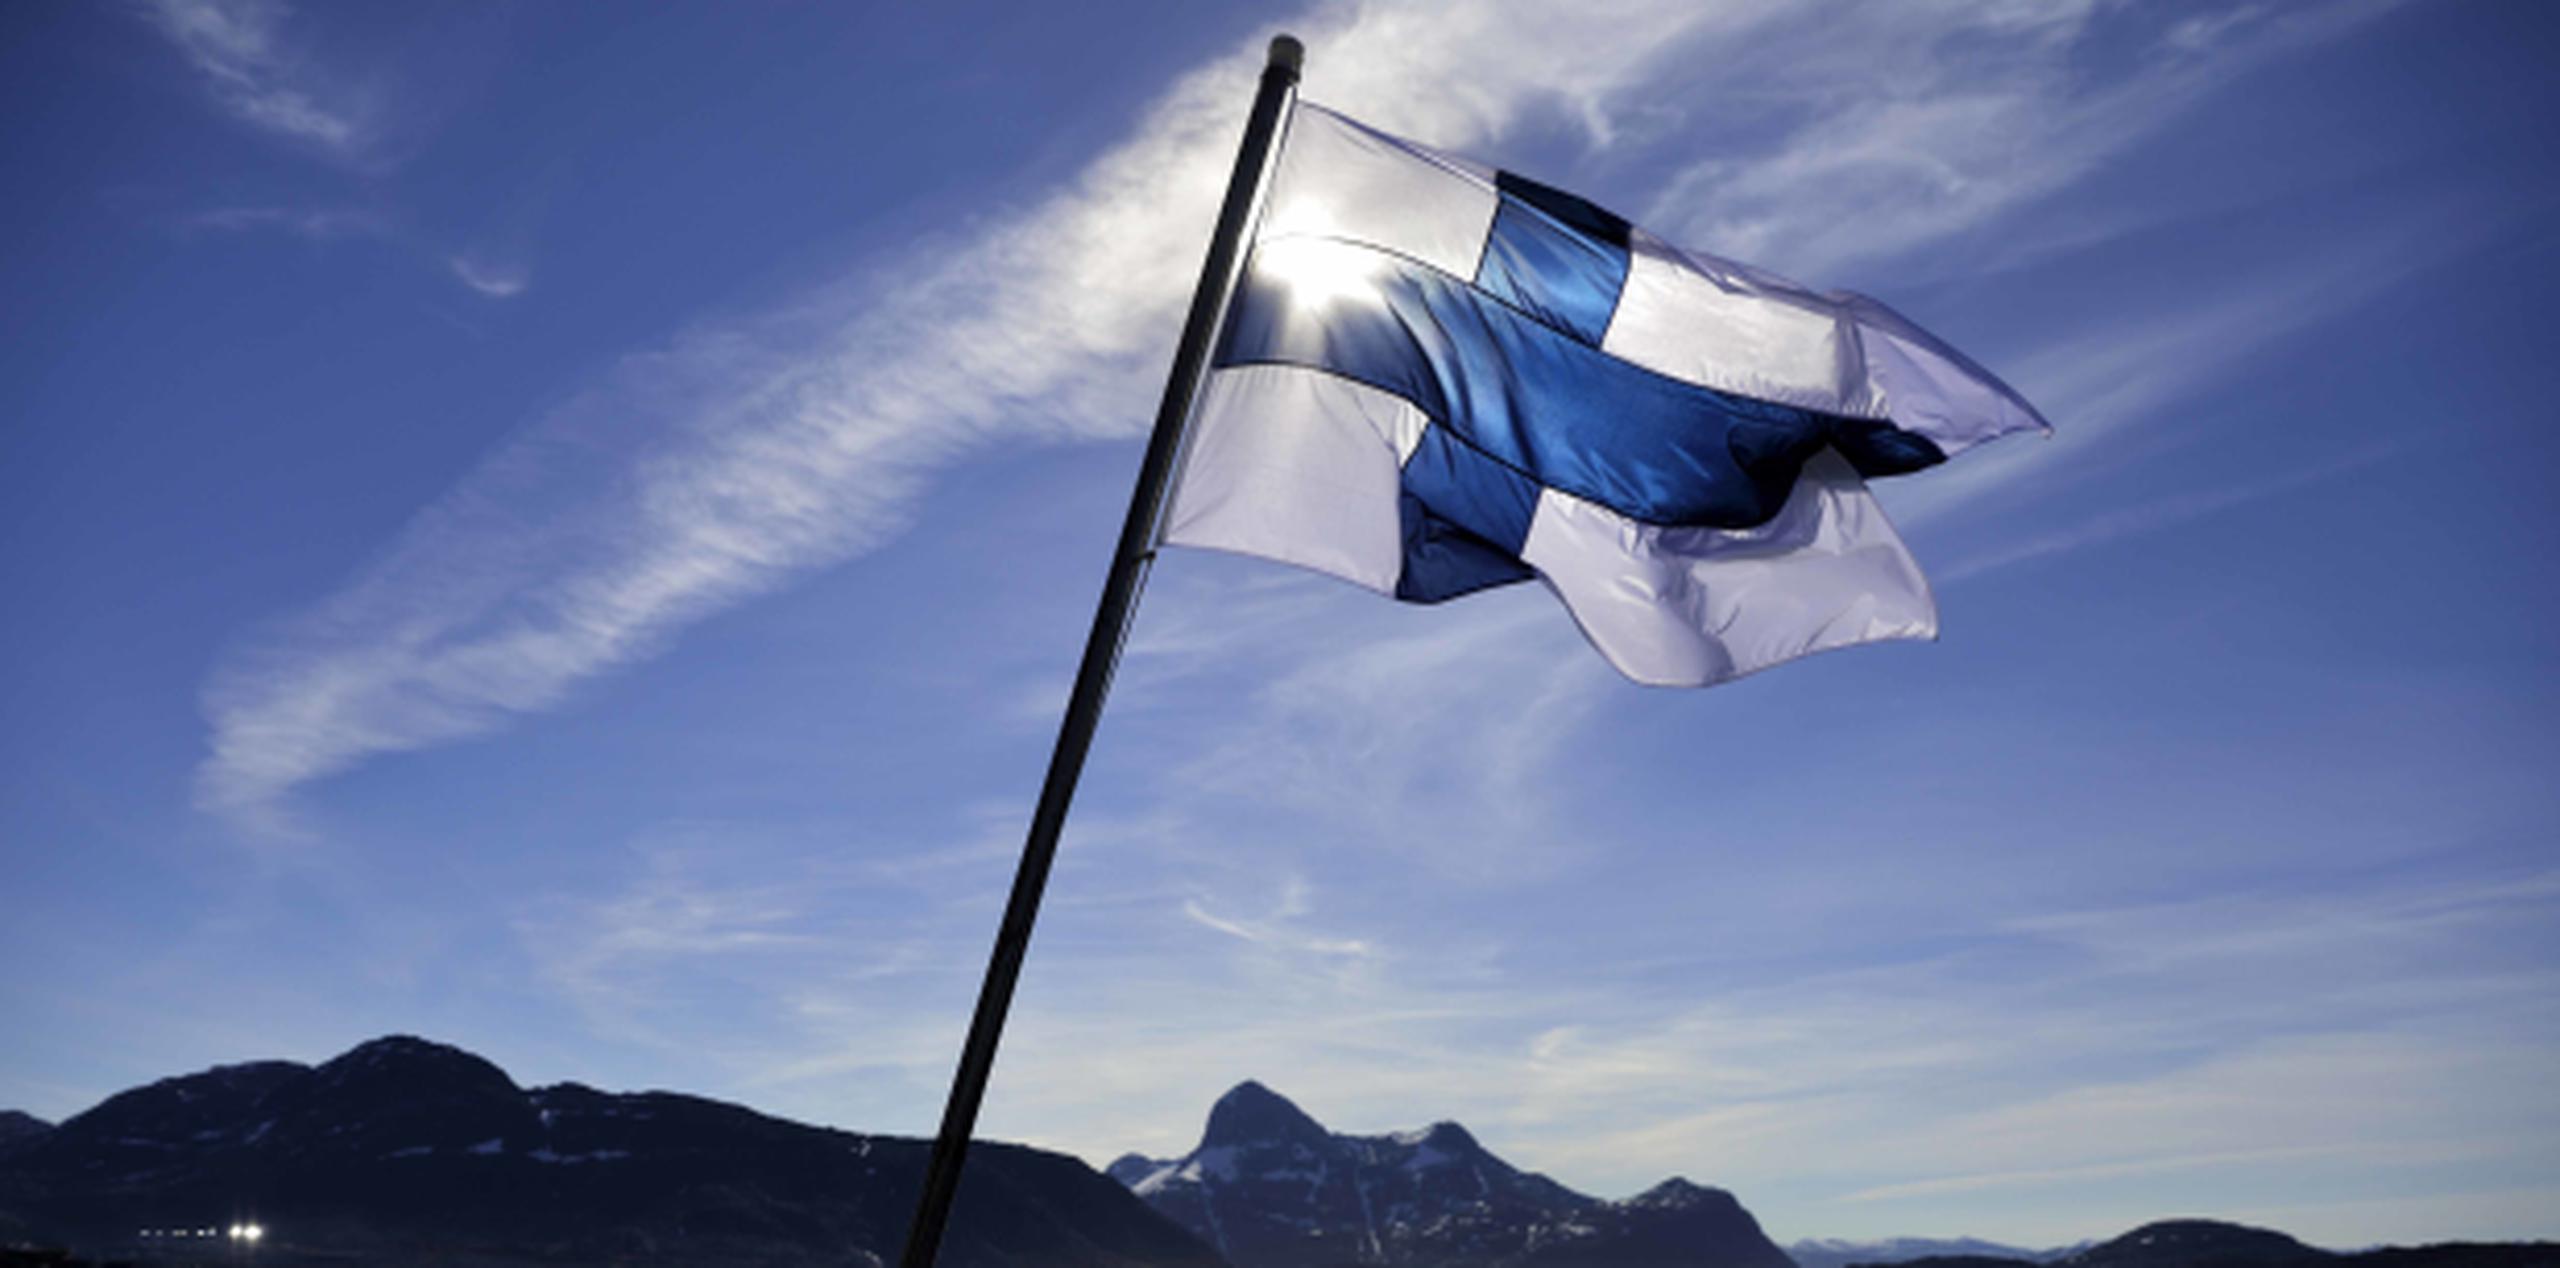 Una bandera del país nórdico ondea a bordo del rompehielos finlandés. (AP)